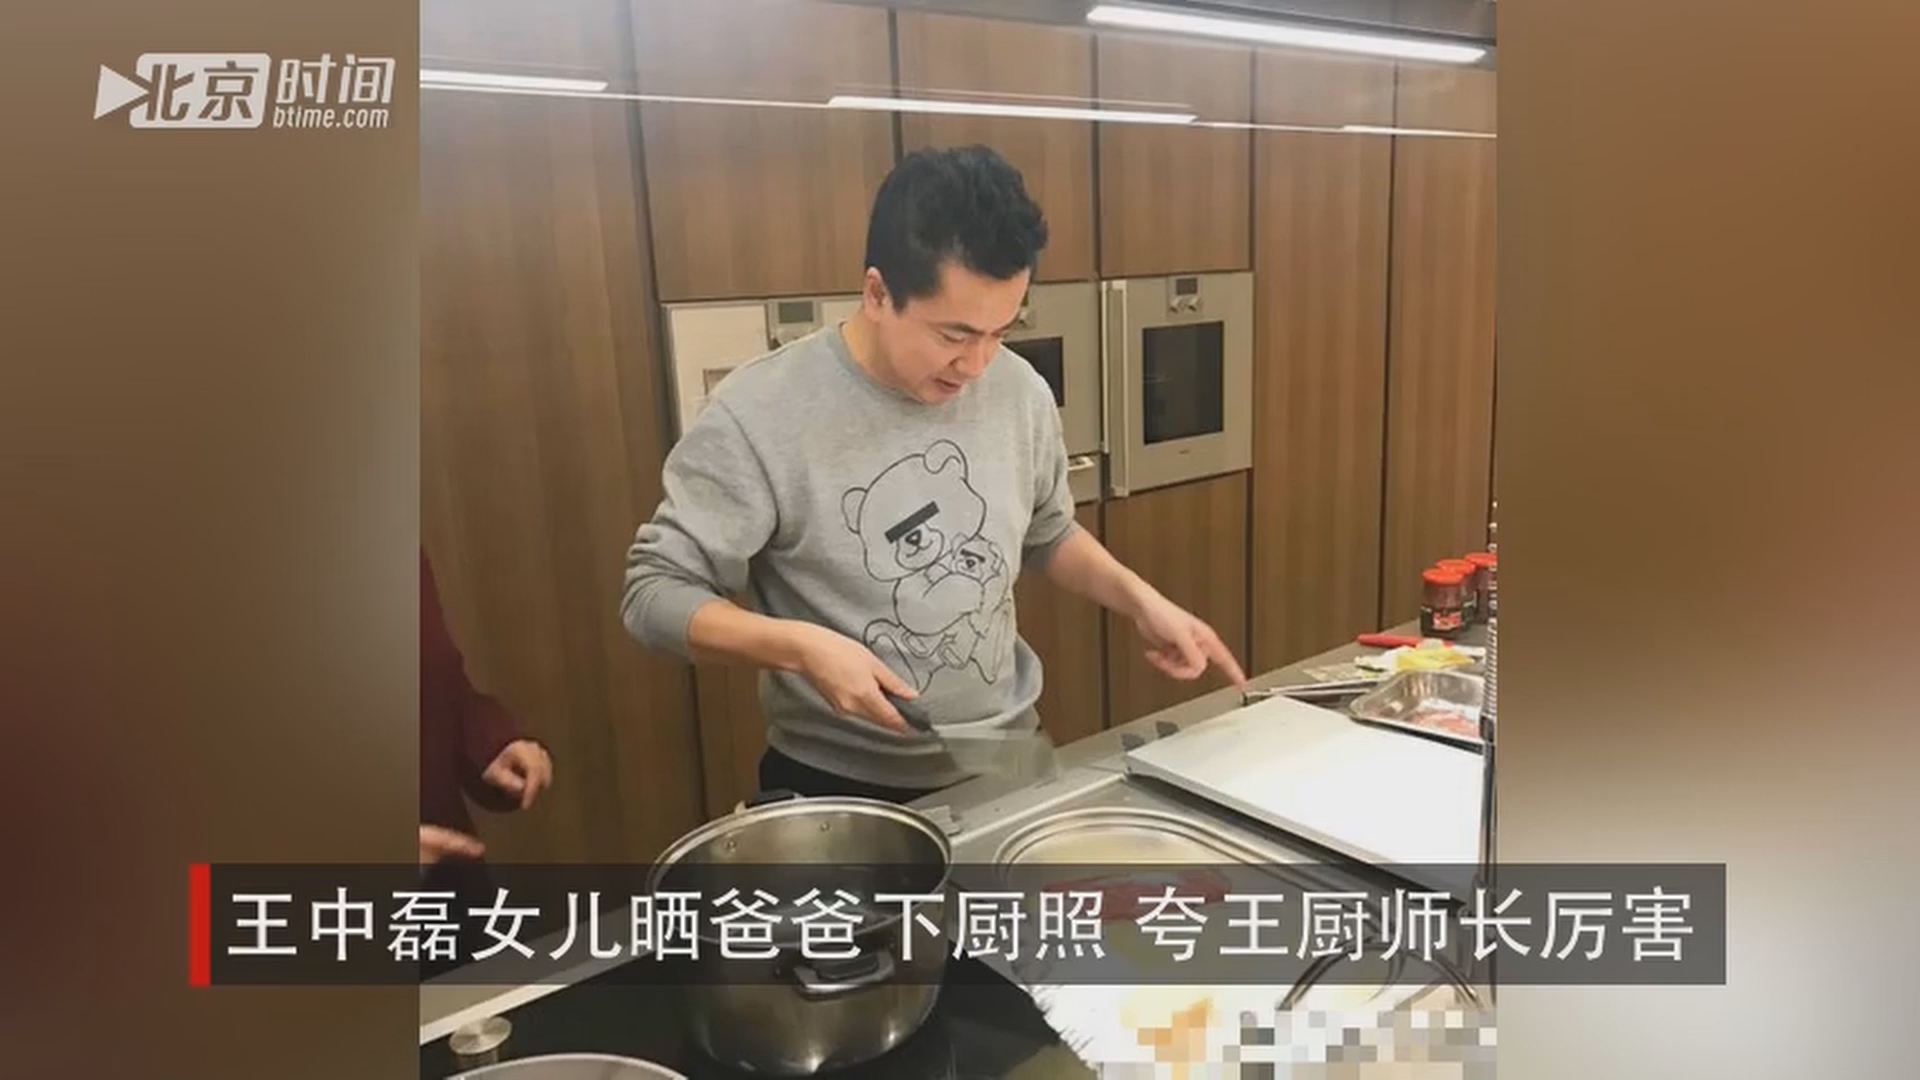 "照片中,王中磊置身厨房,非常的专注,手拿厨具,牛肉和意大利面很是